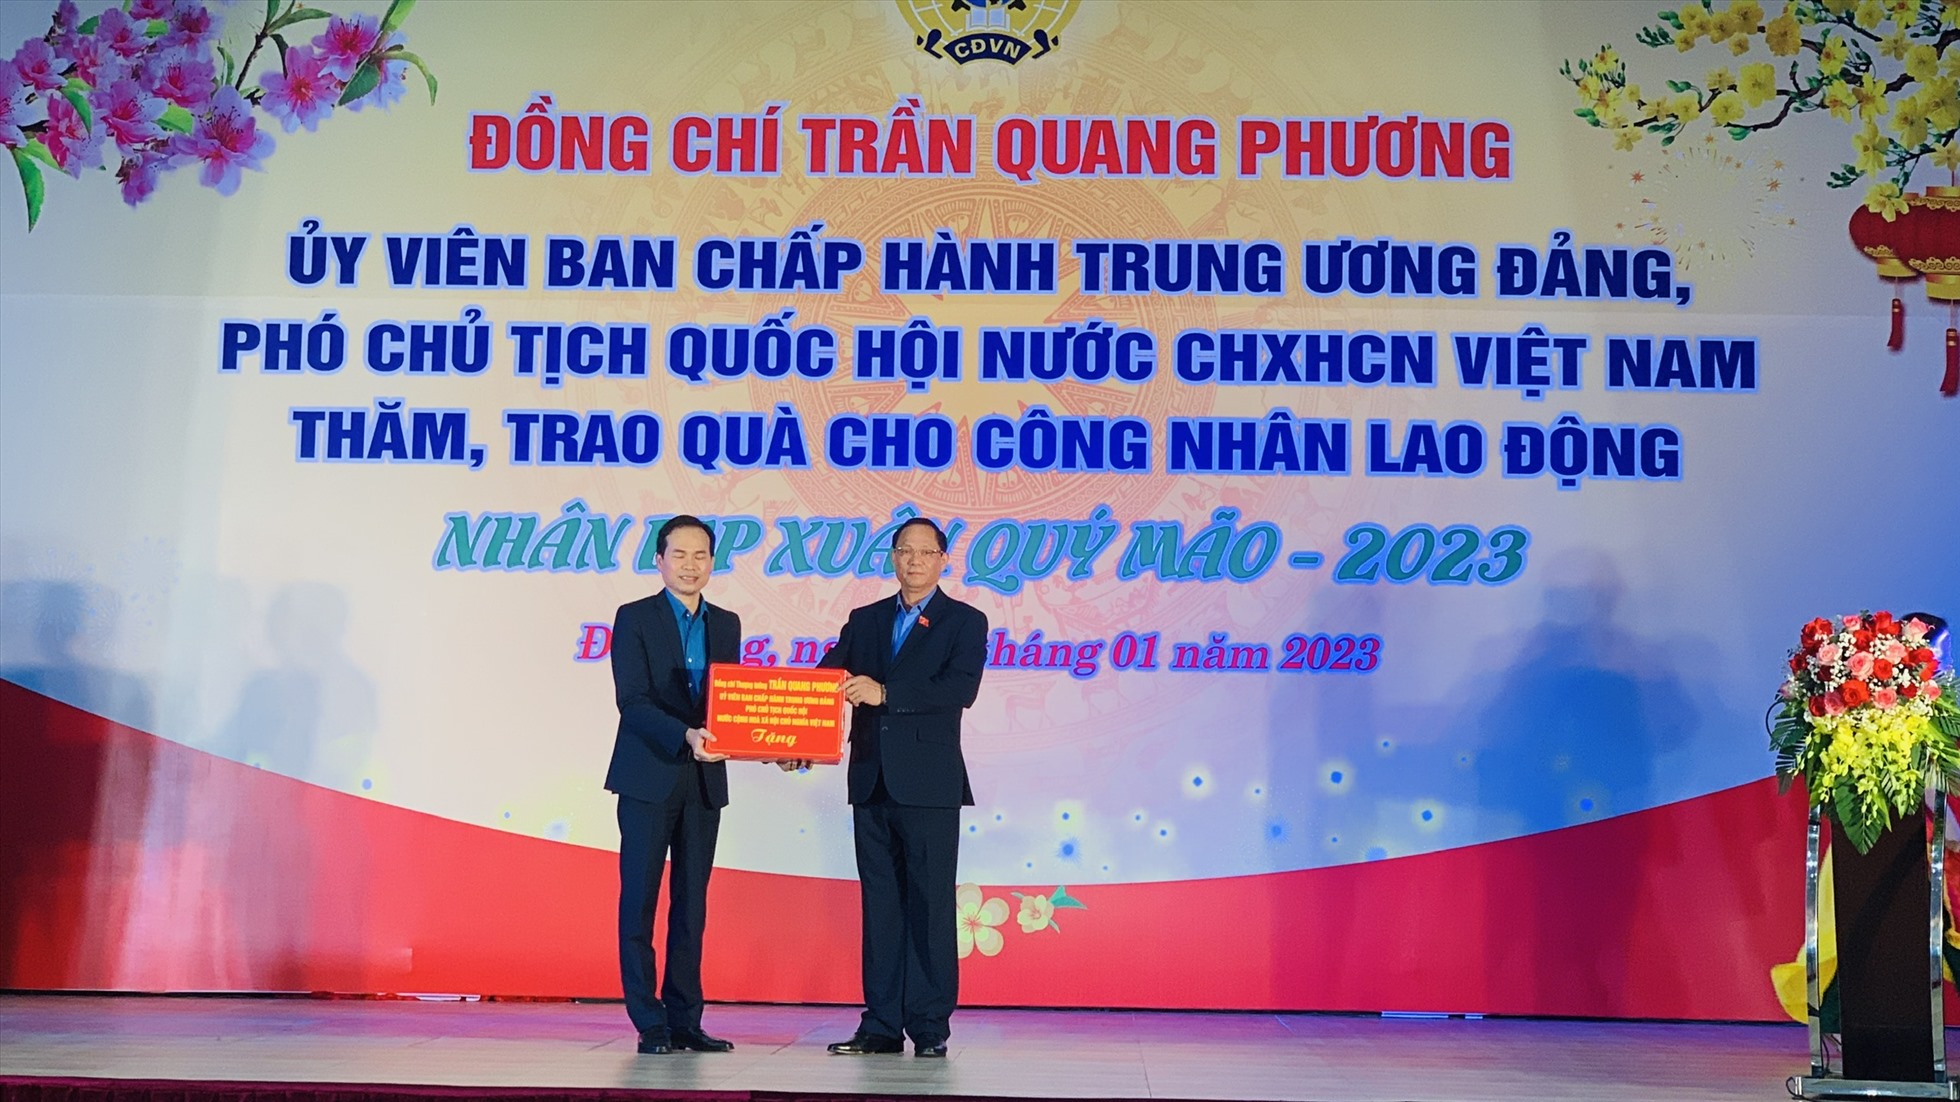 Ông Nguyễn Duy Minh, Chủ tịch Liên đoàn Lao động thành phố Đà Nẵng (trái) nhận phần quà của công nhân lao động từ Thượng tướng Trần Quang Phương, Phó Chủ tịch Quốc hội. Ảnh: Tường Minh